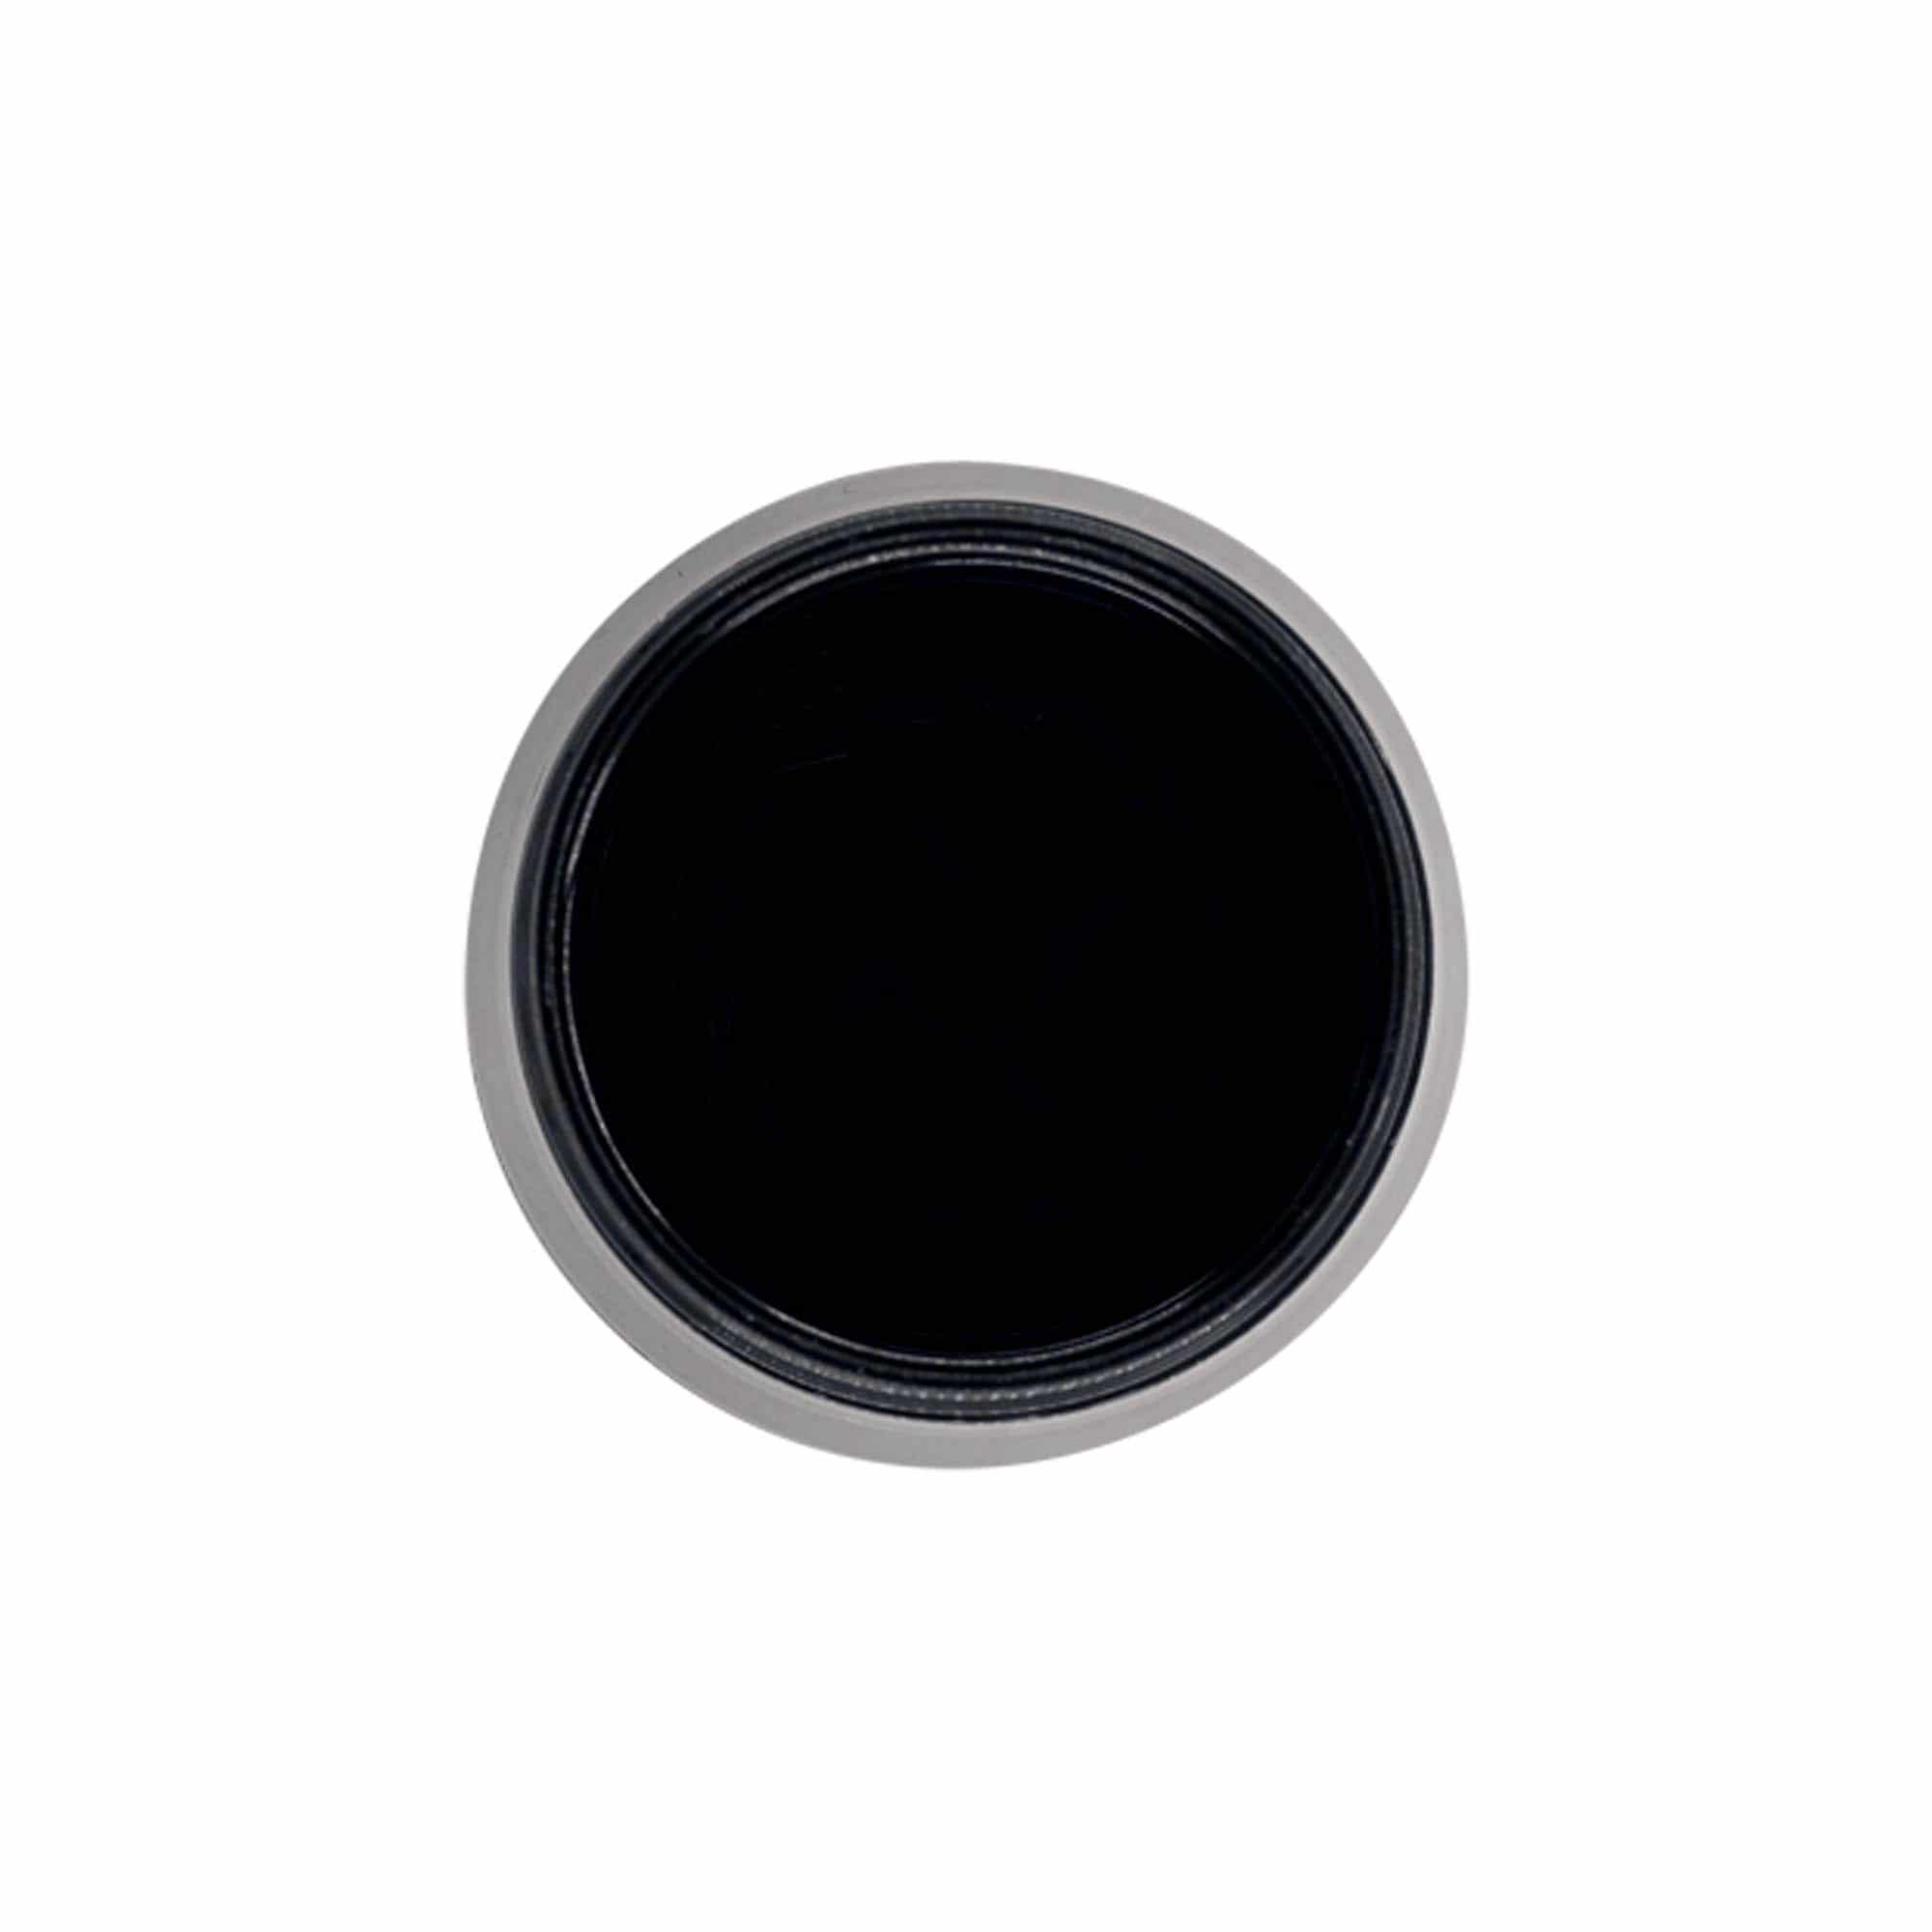 Zakrętka słoiczka na przyprawy do młynka, tworzywo sztuczne PP, kolor czarny, do zamknięcia: GPI 38/400